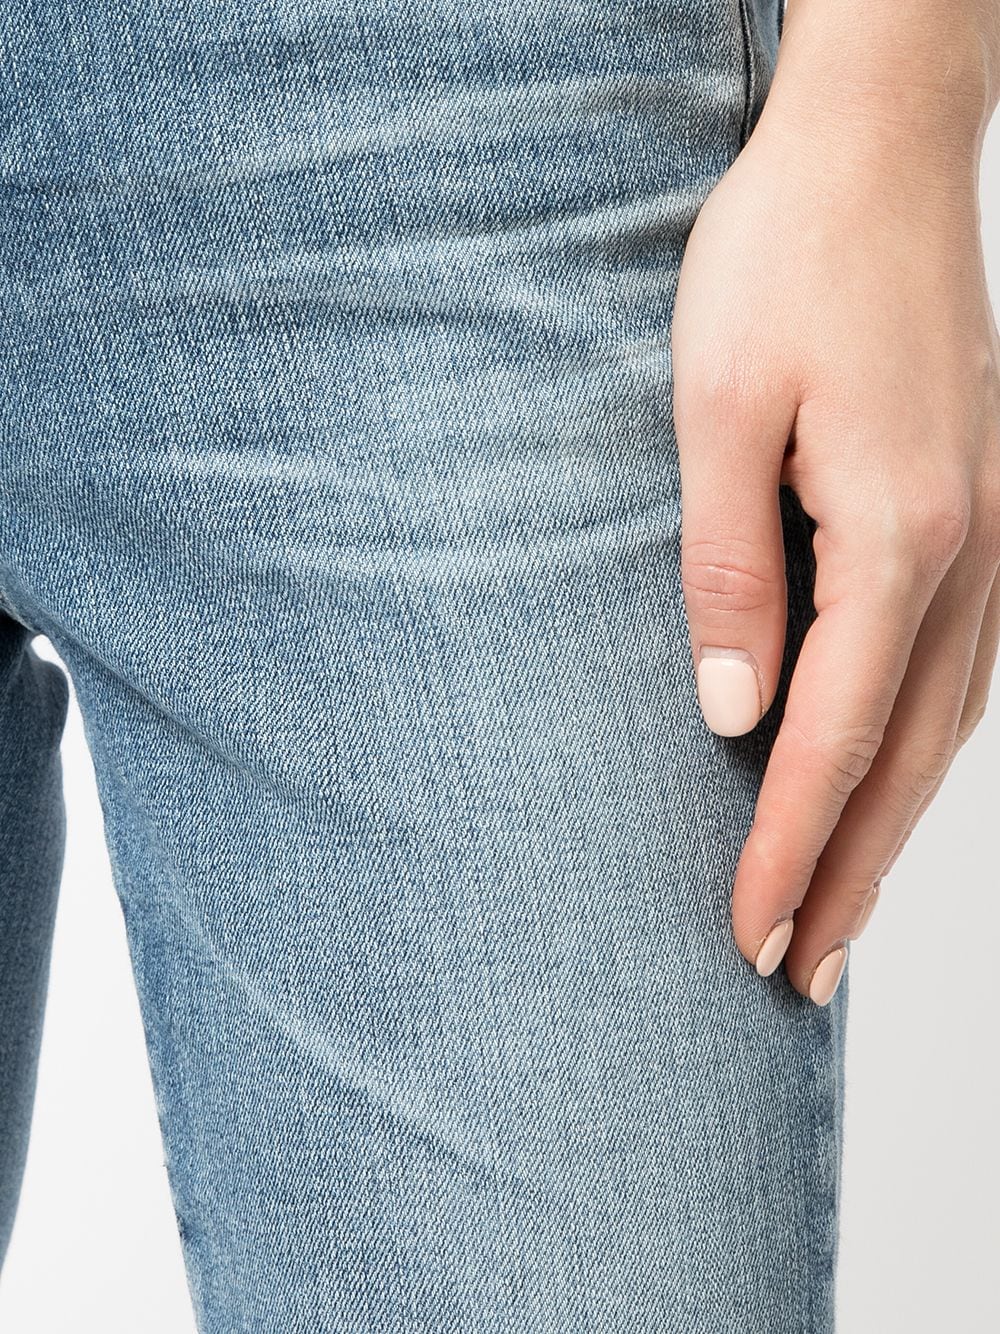 фото Ag jeans прямые джинсы средней посадки